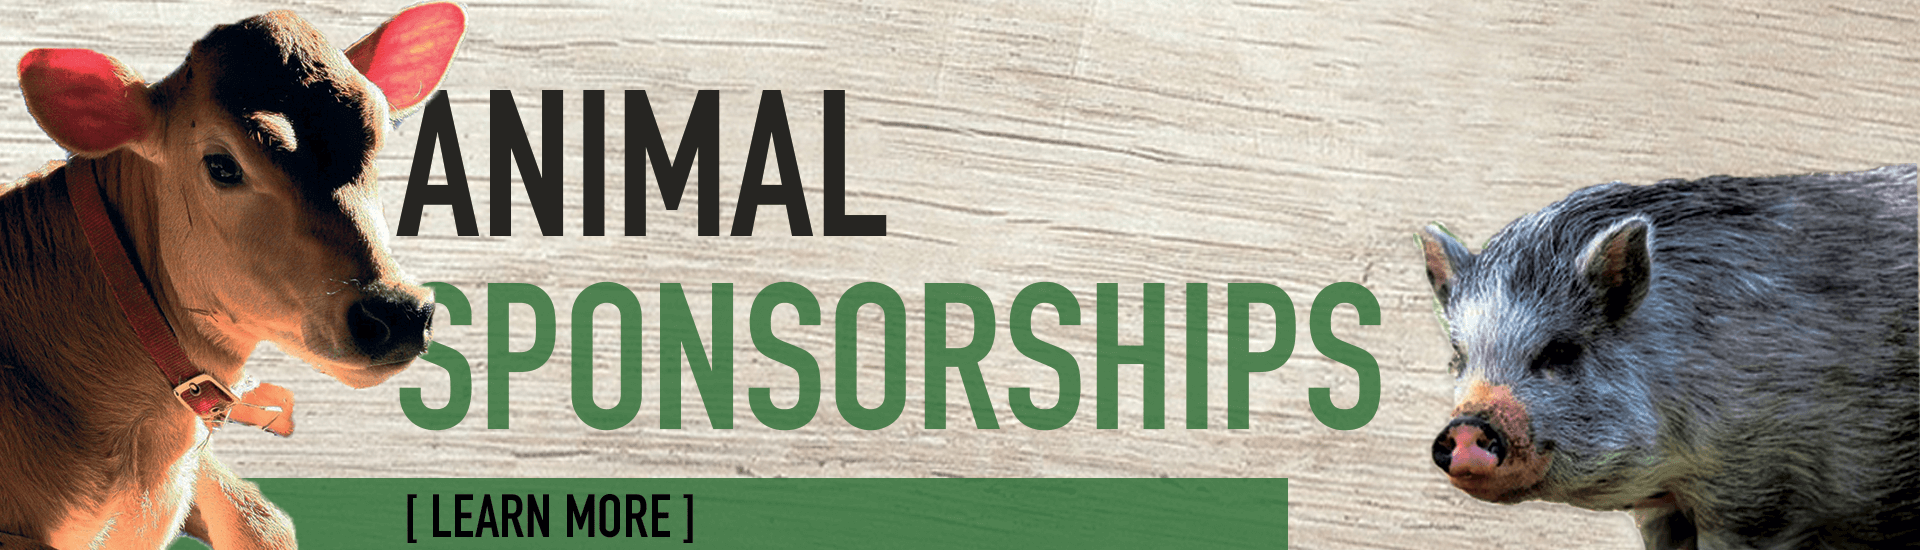 Hillside animal sponsorship opportunities